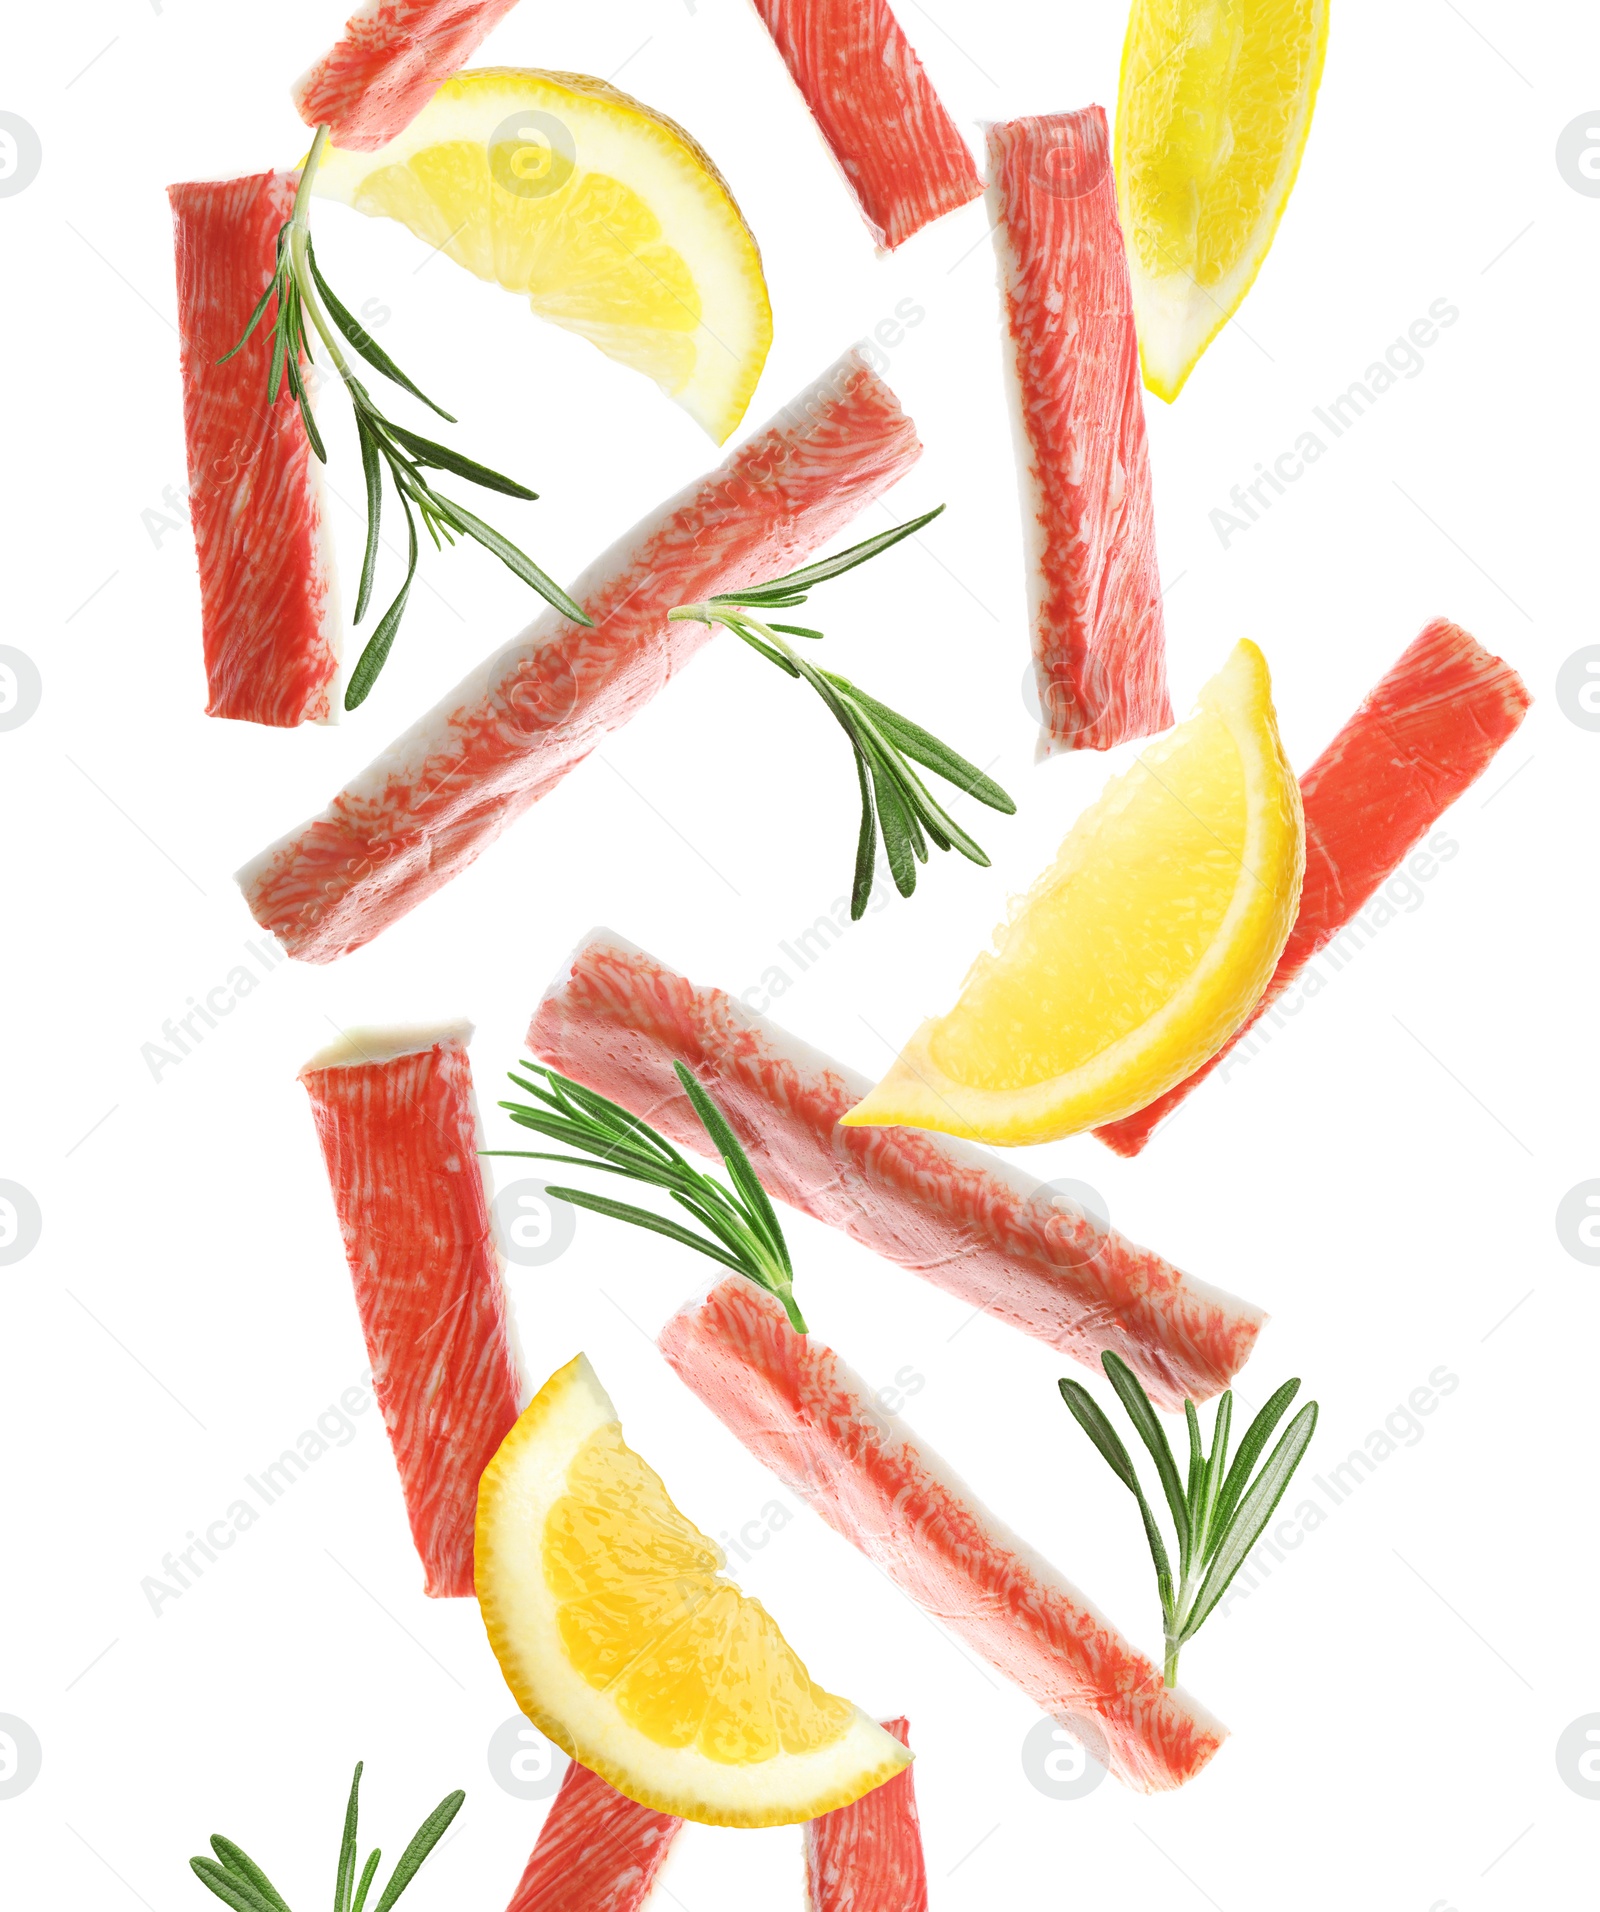 Image of Cut fresh crab sticks, lemon and rosemary falling on white background